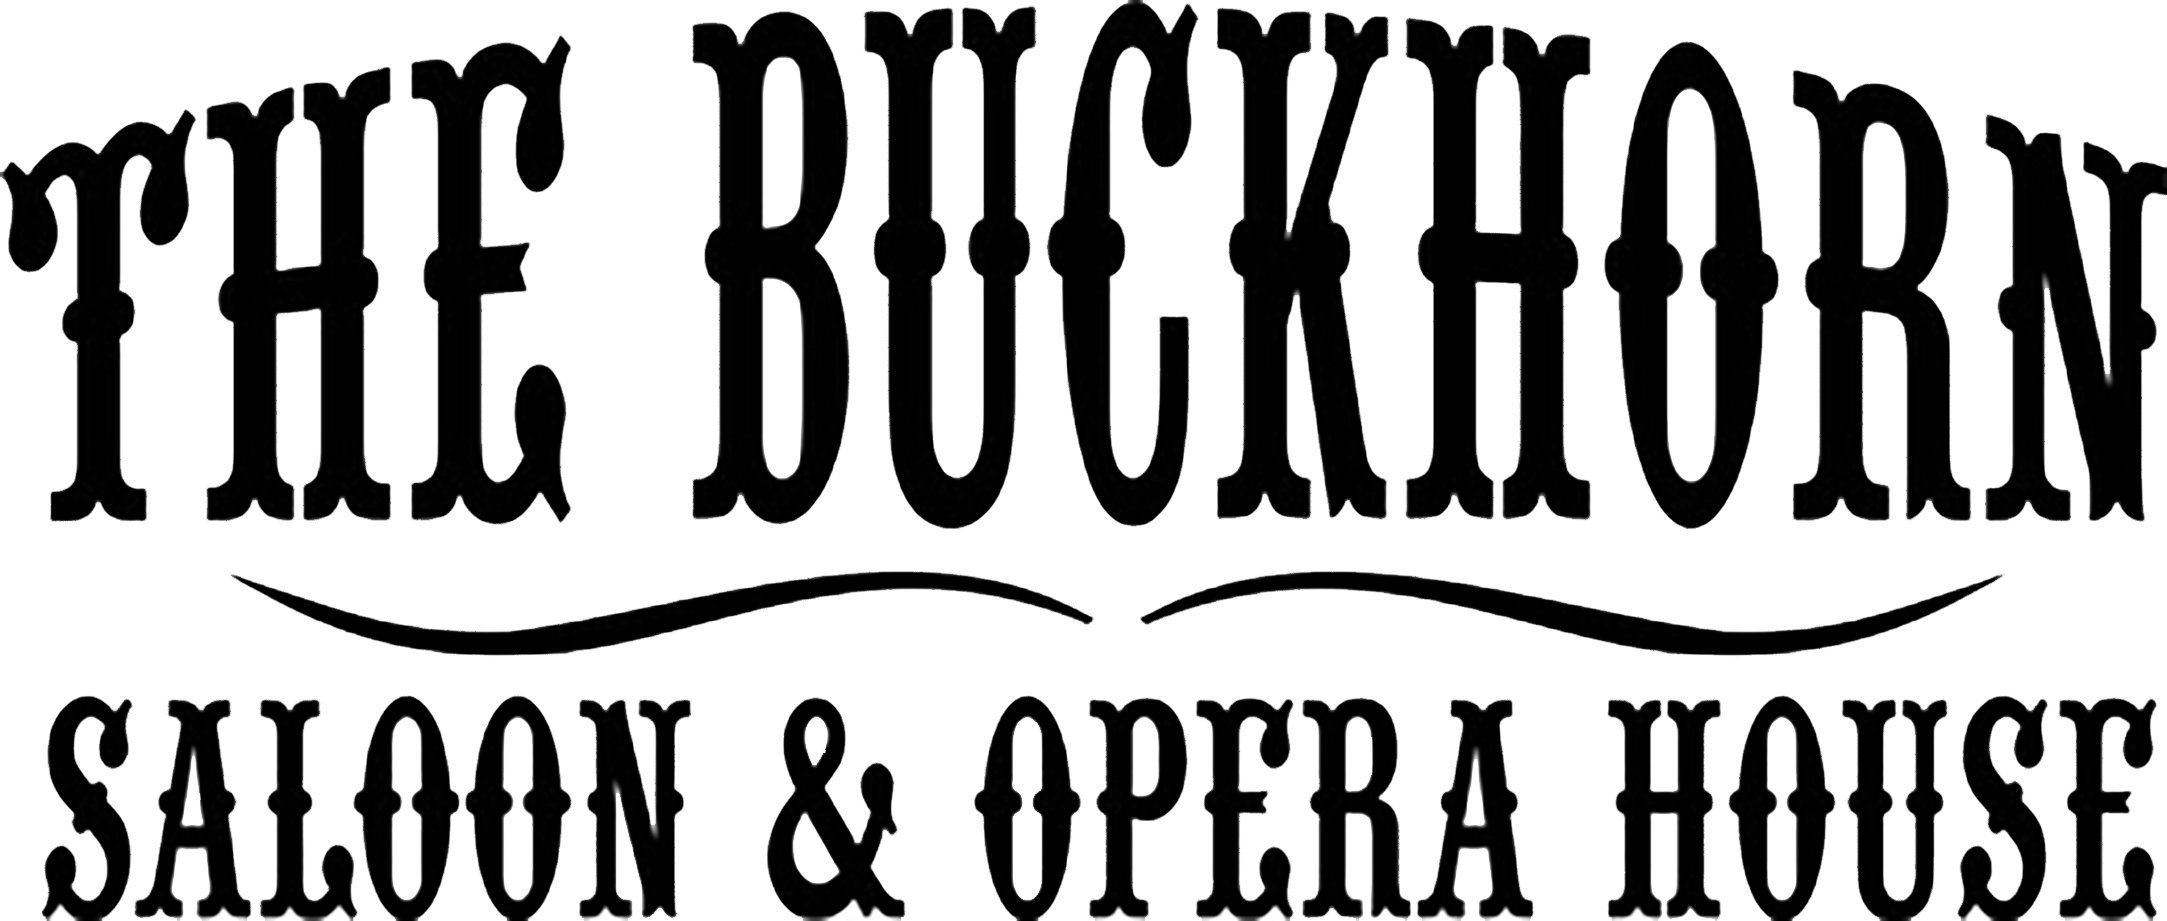 Buckhorn logo.png